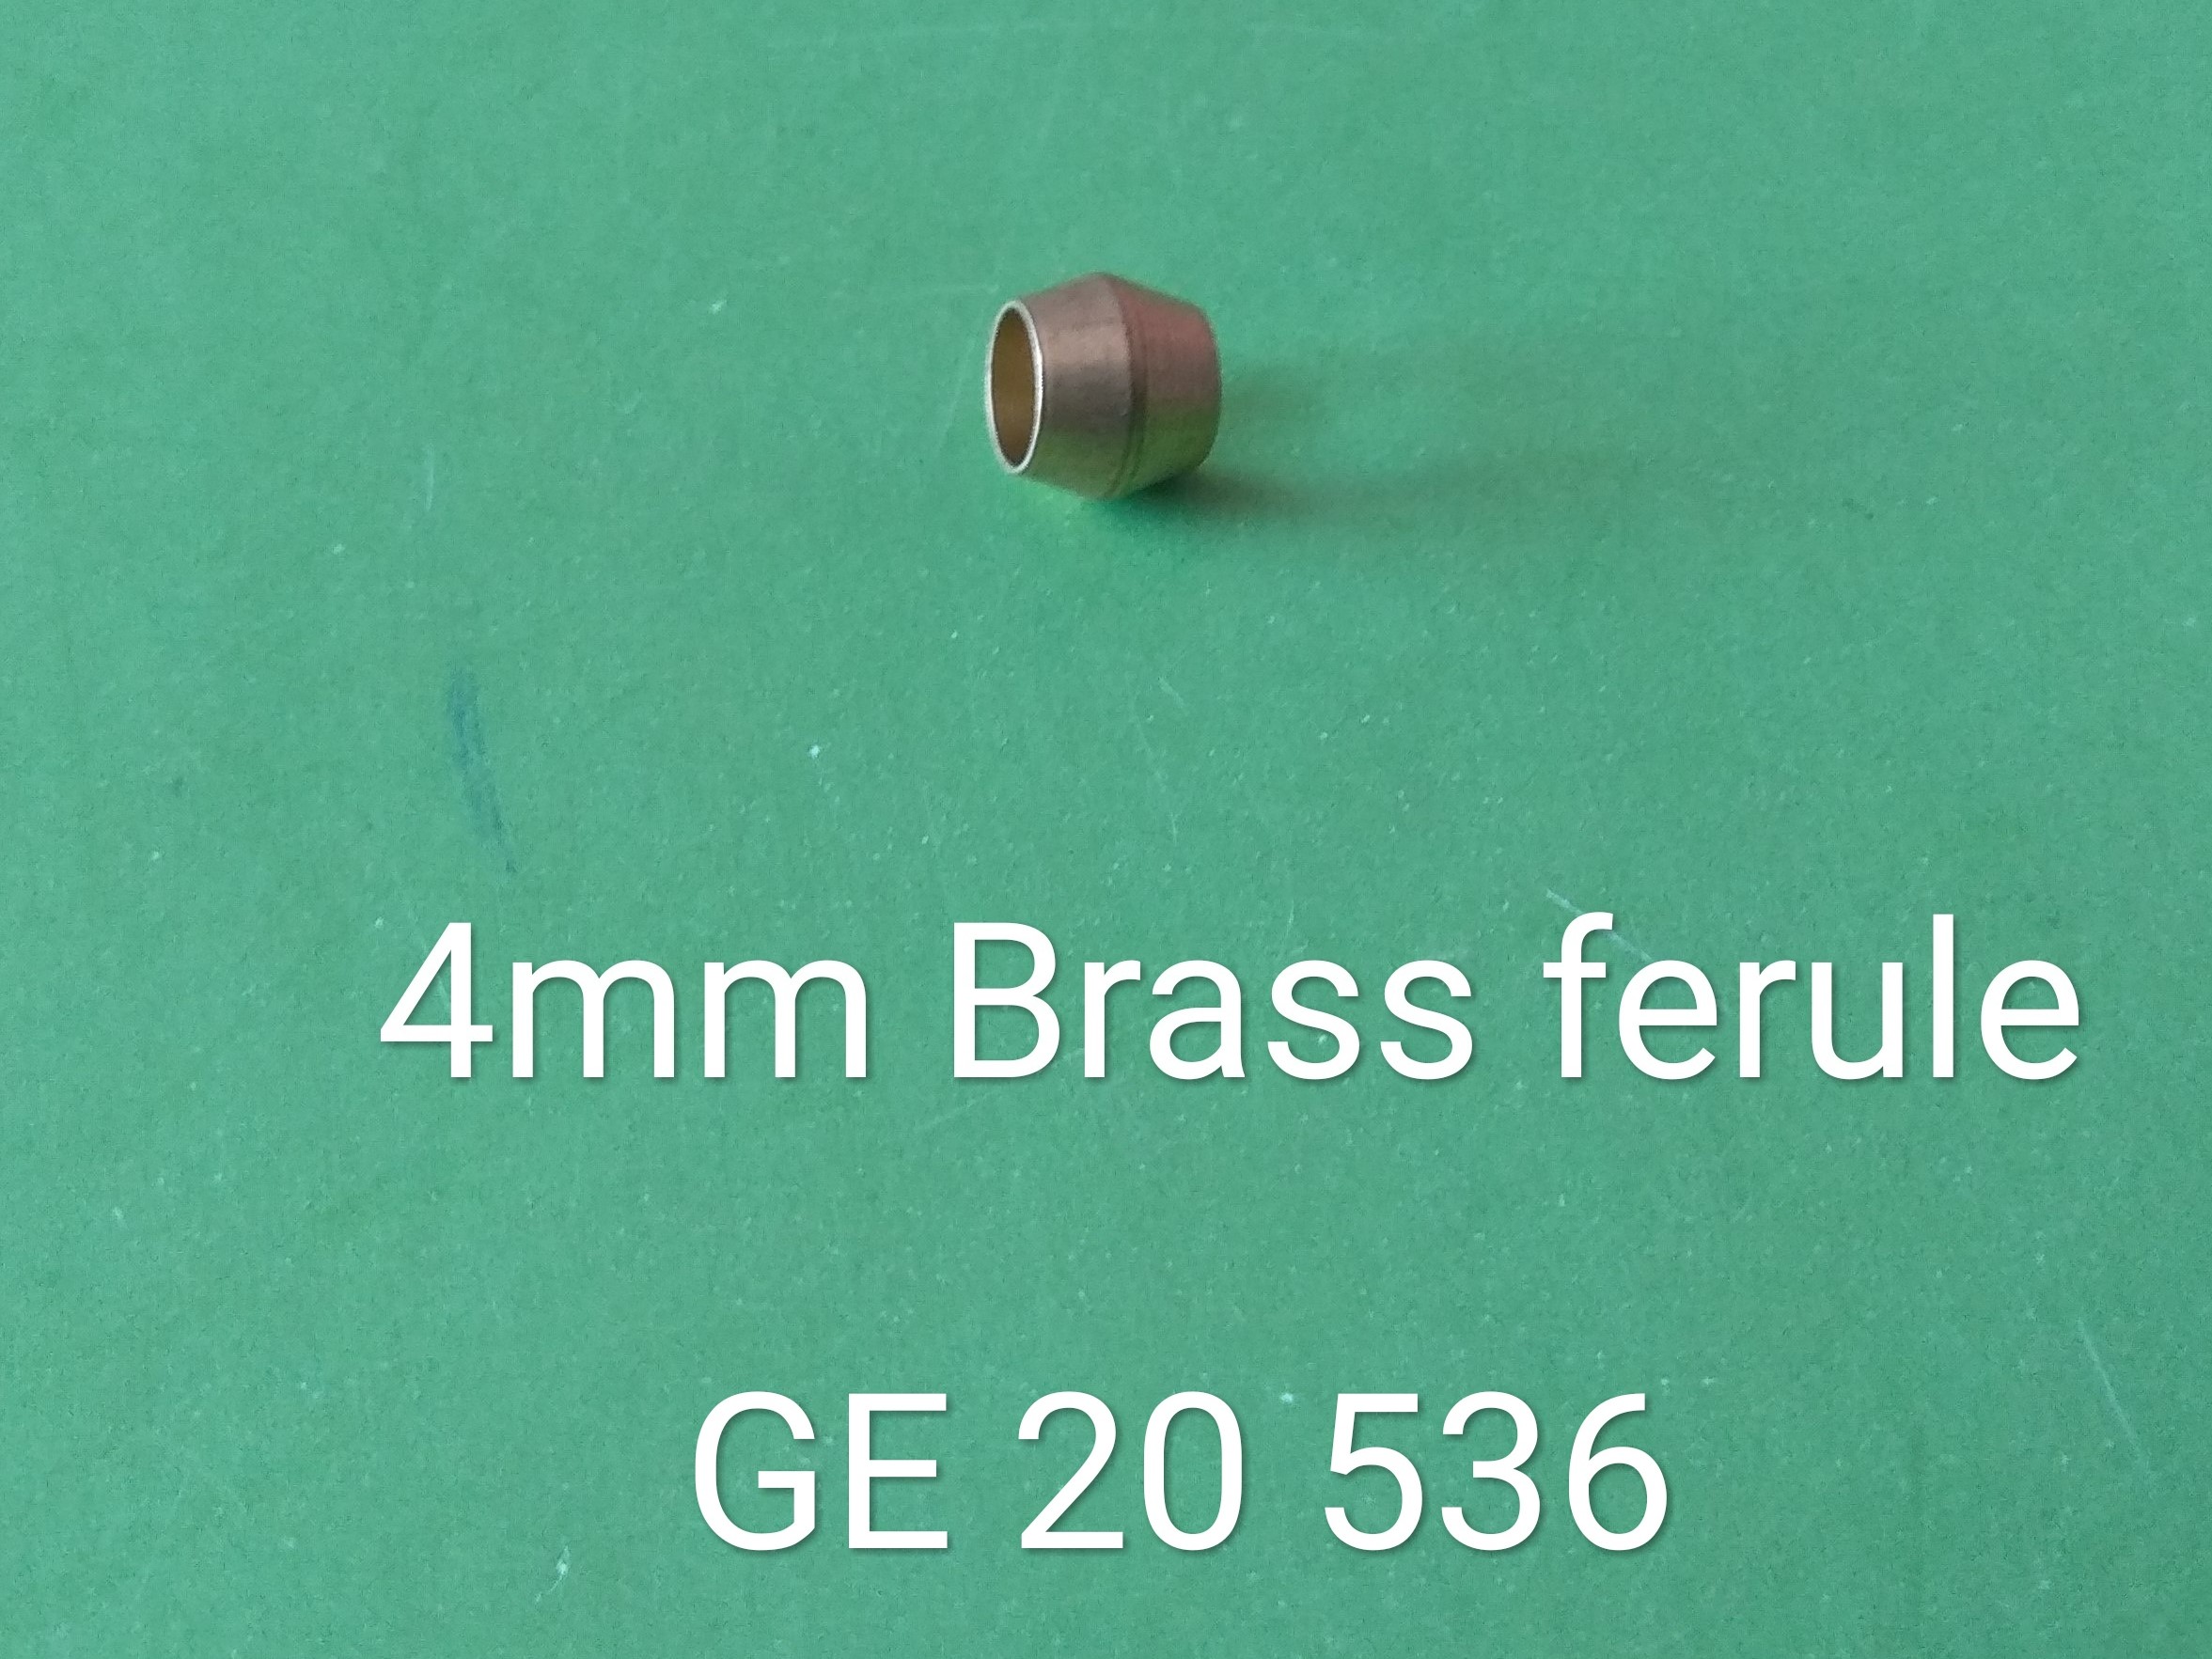 GE_20_536_4mm_Brass_Ferule__75_18.jpg